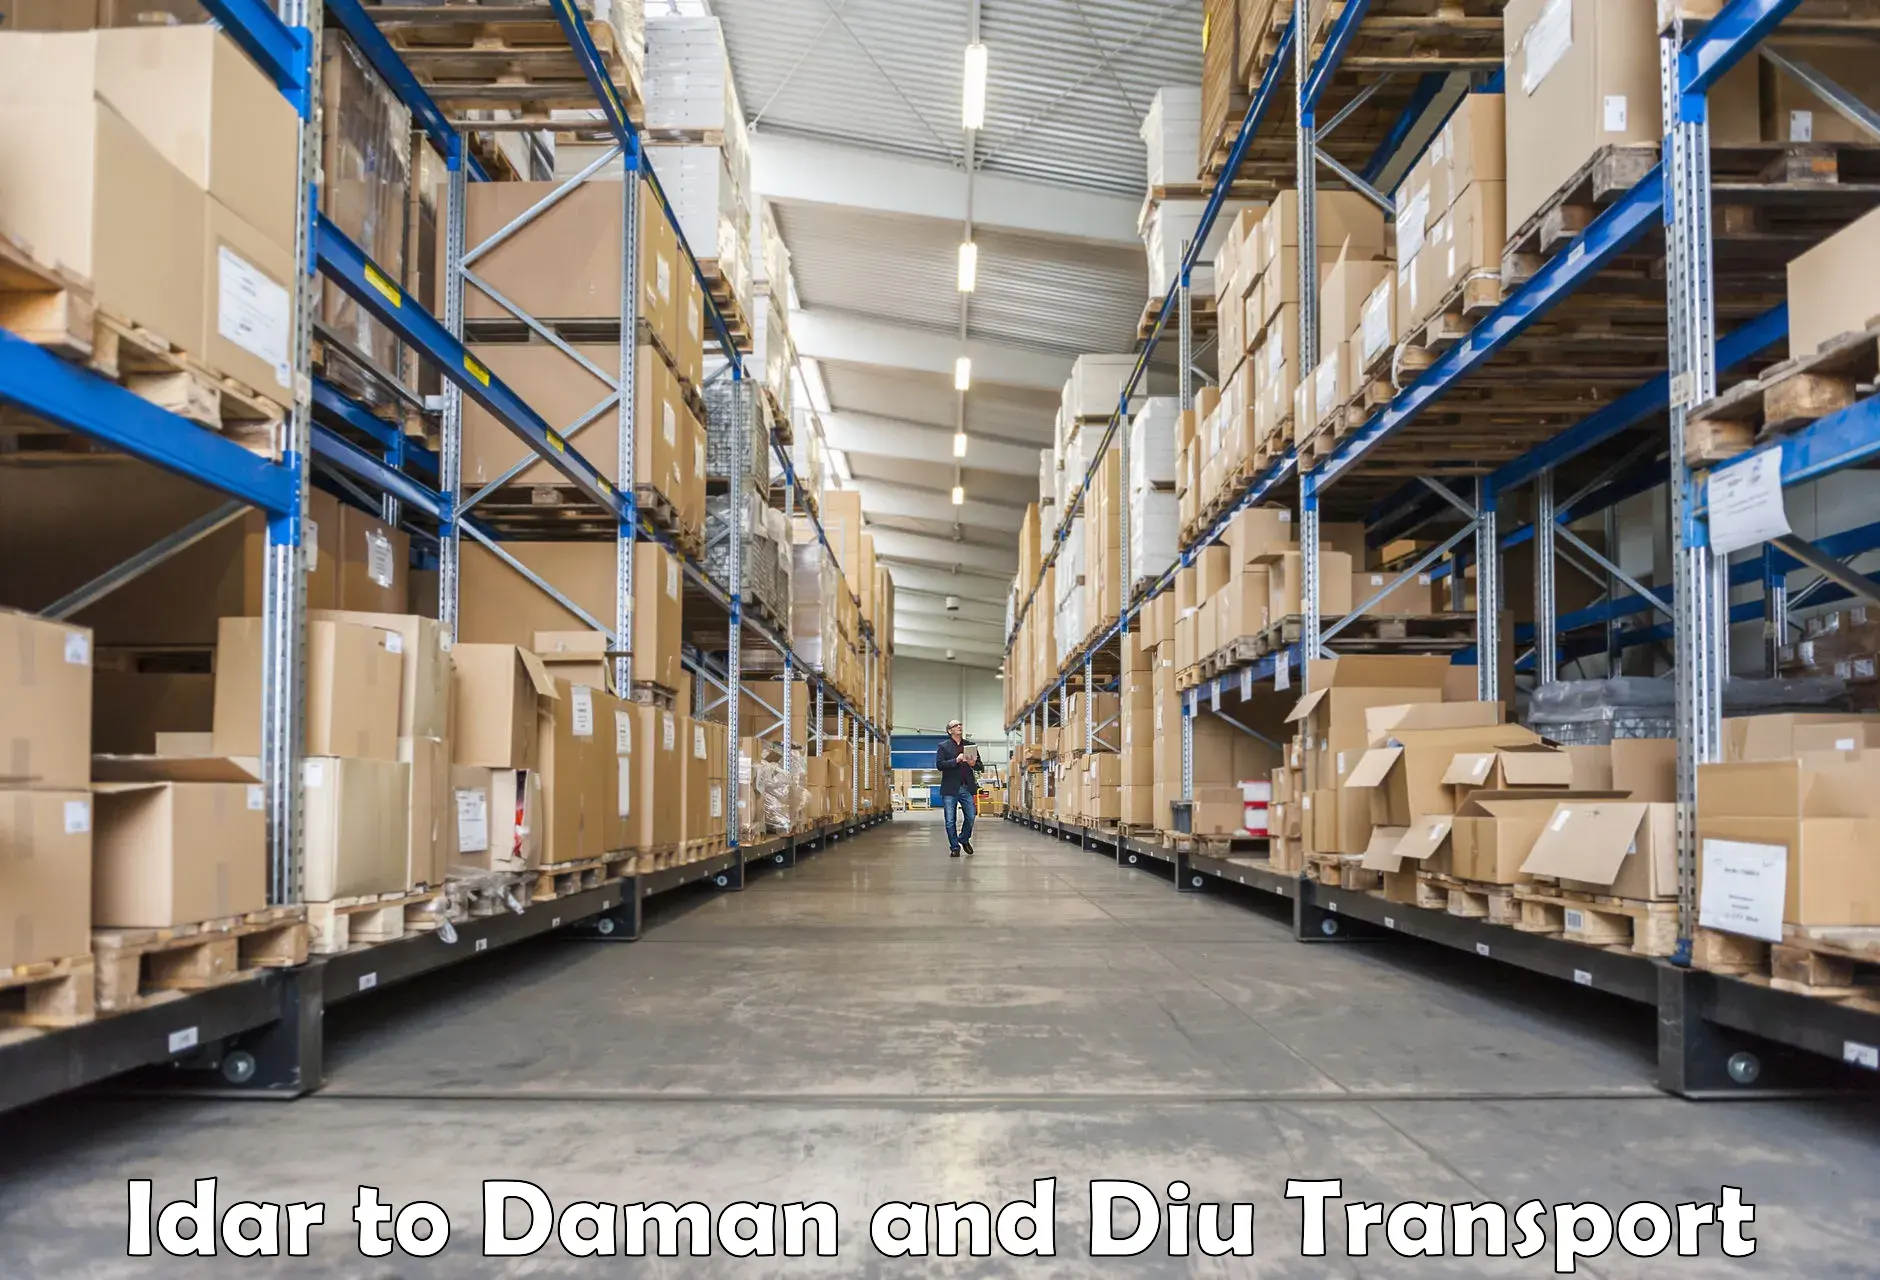 Pick up transport service Idar to Daman and Diu